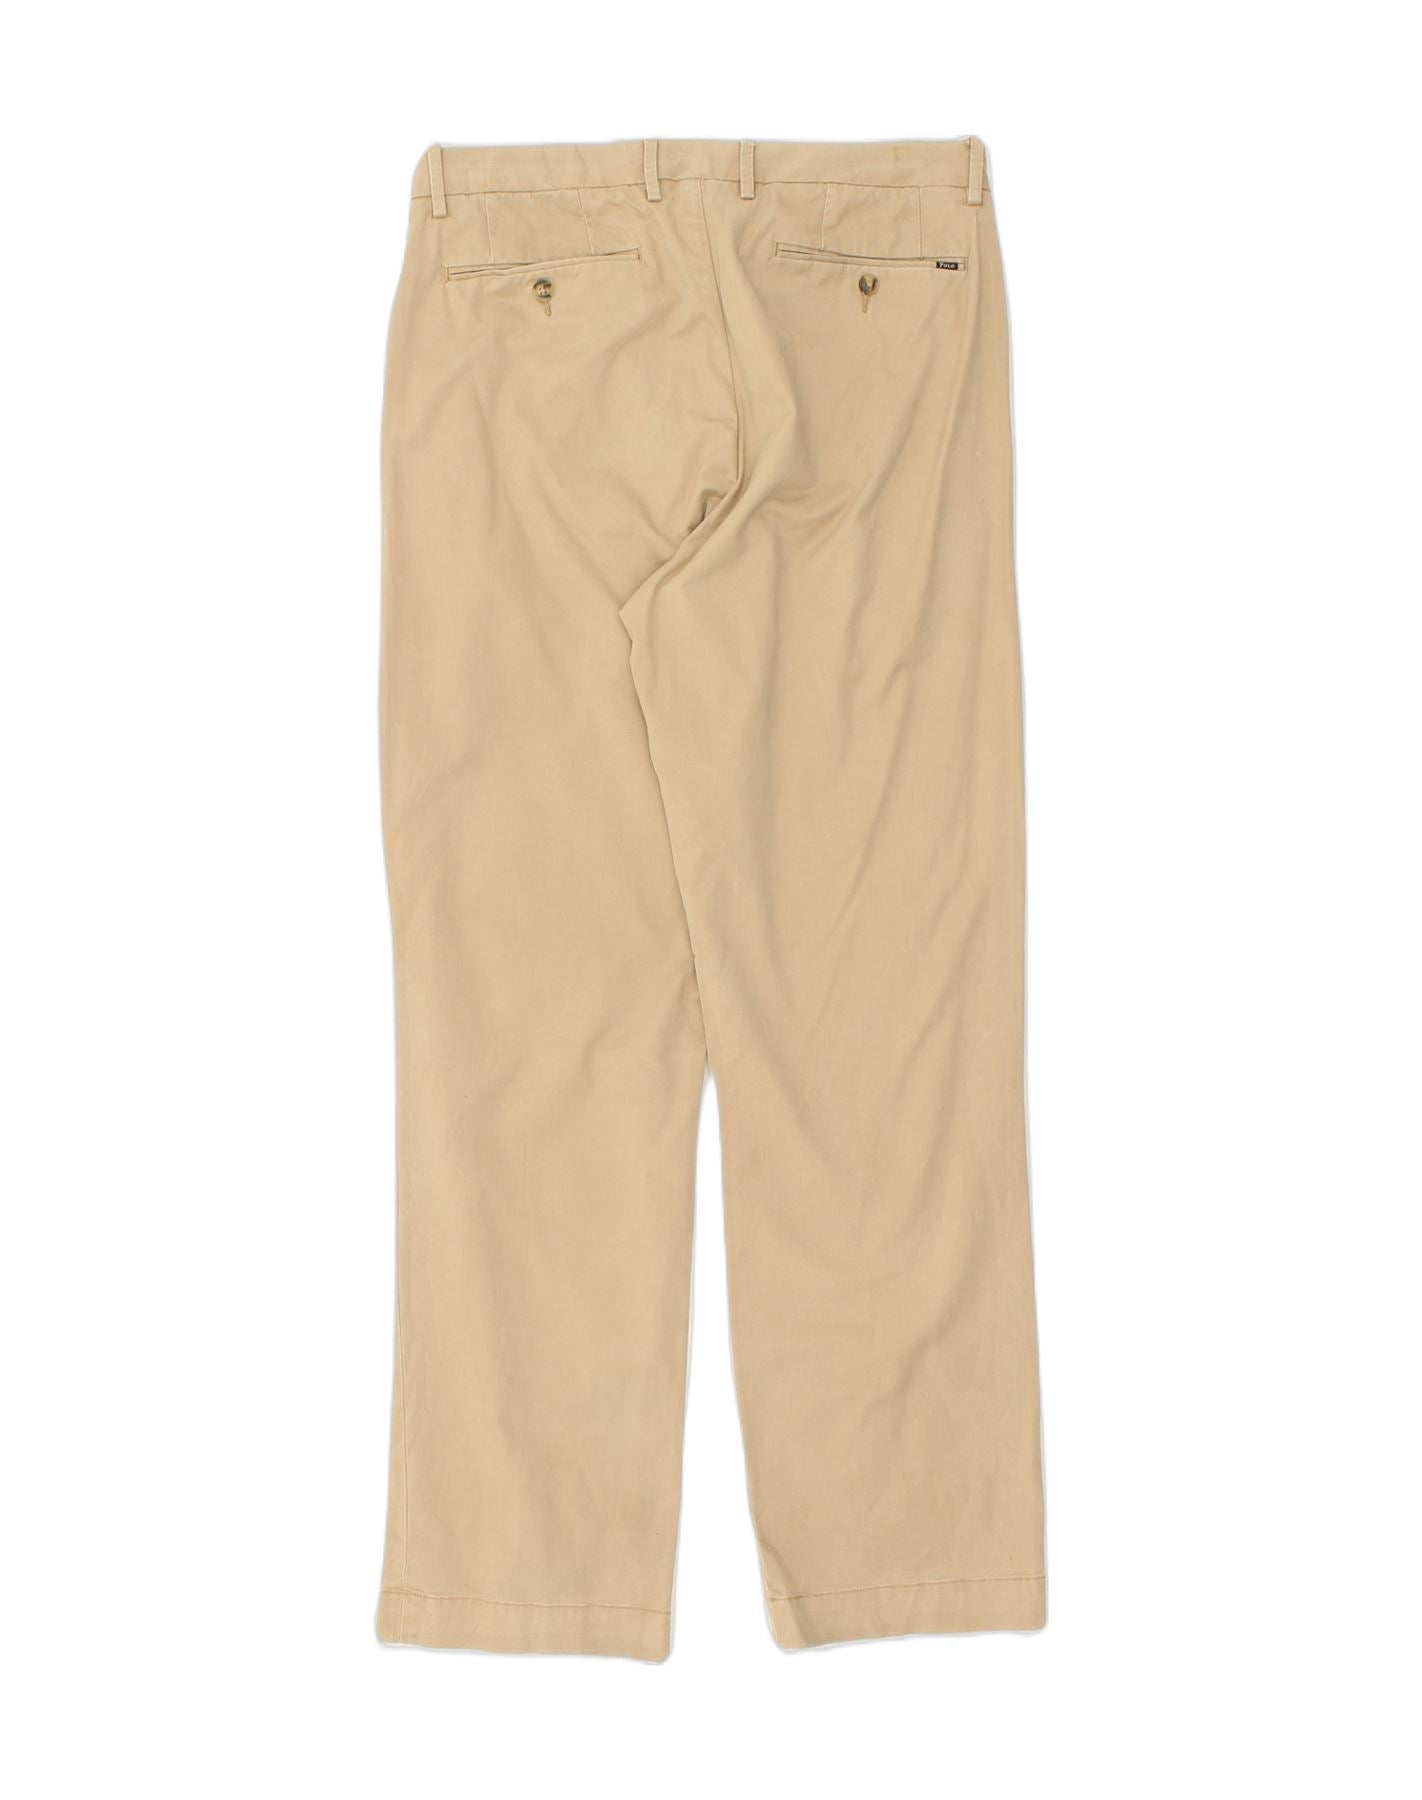 Buy Polo Ralph Lauren Pants, Clothing Online